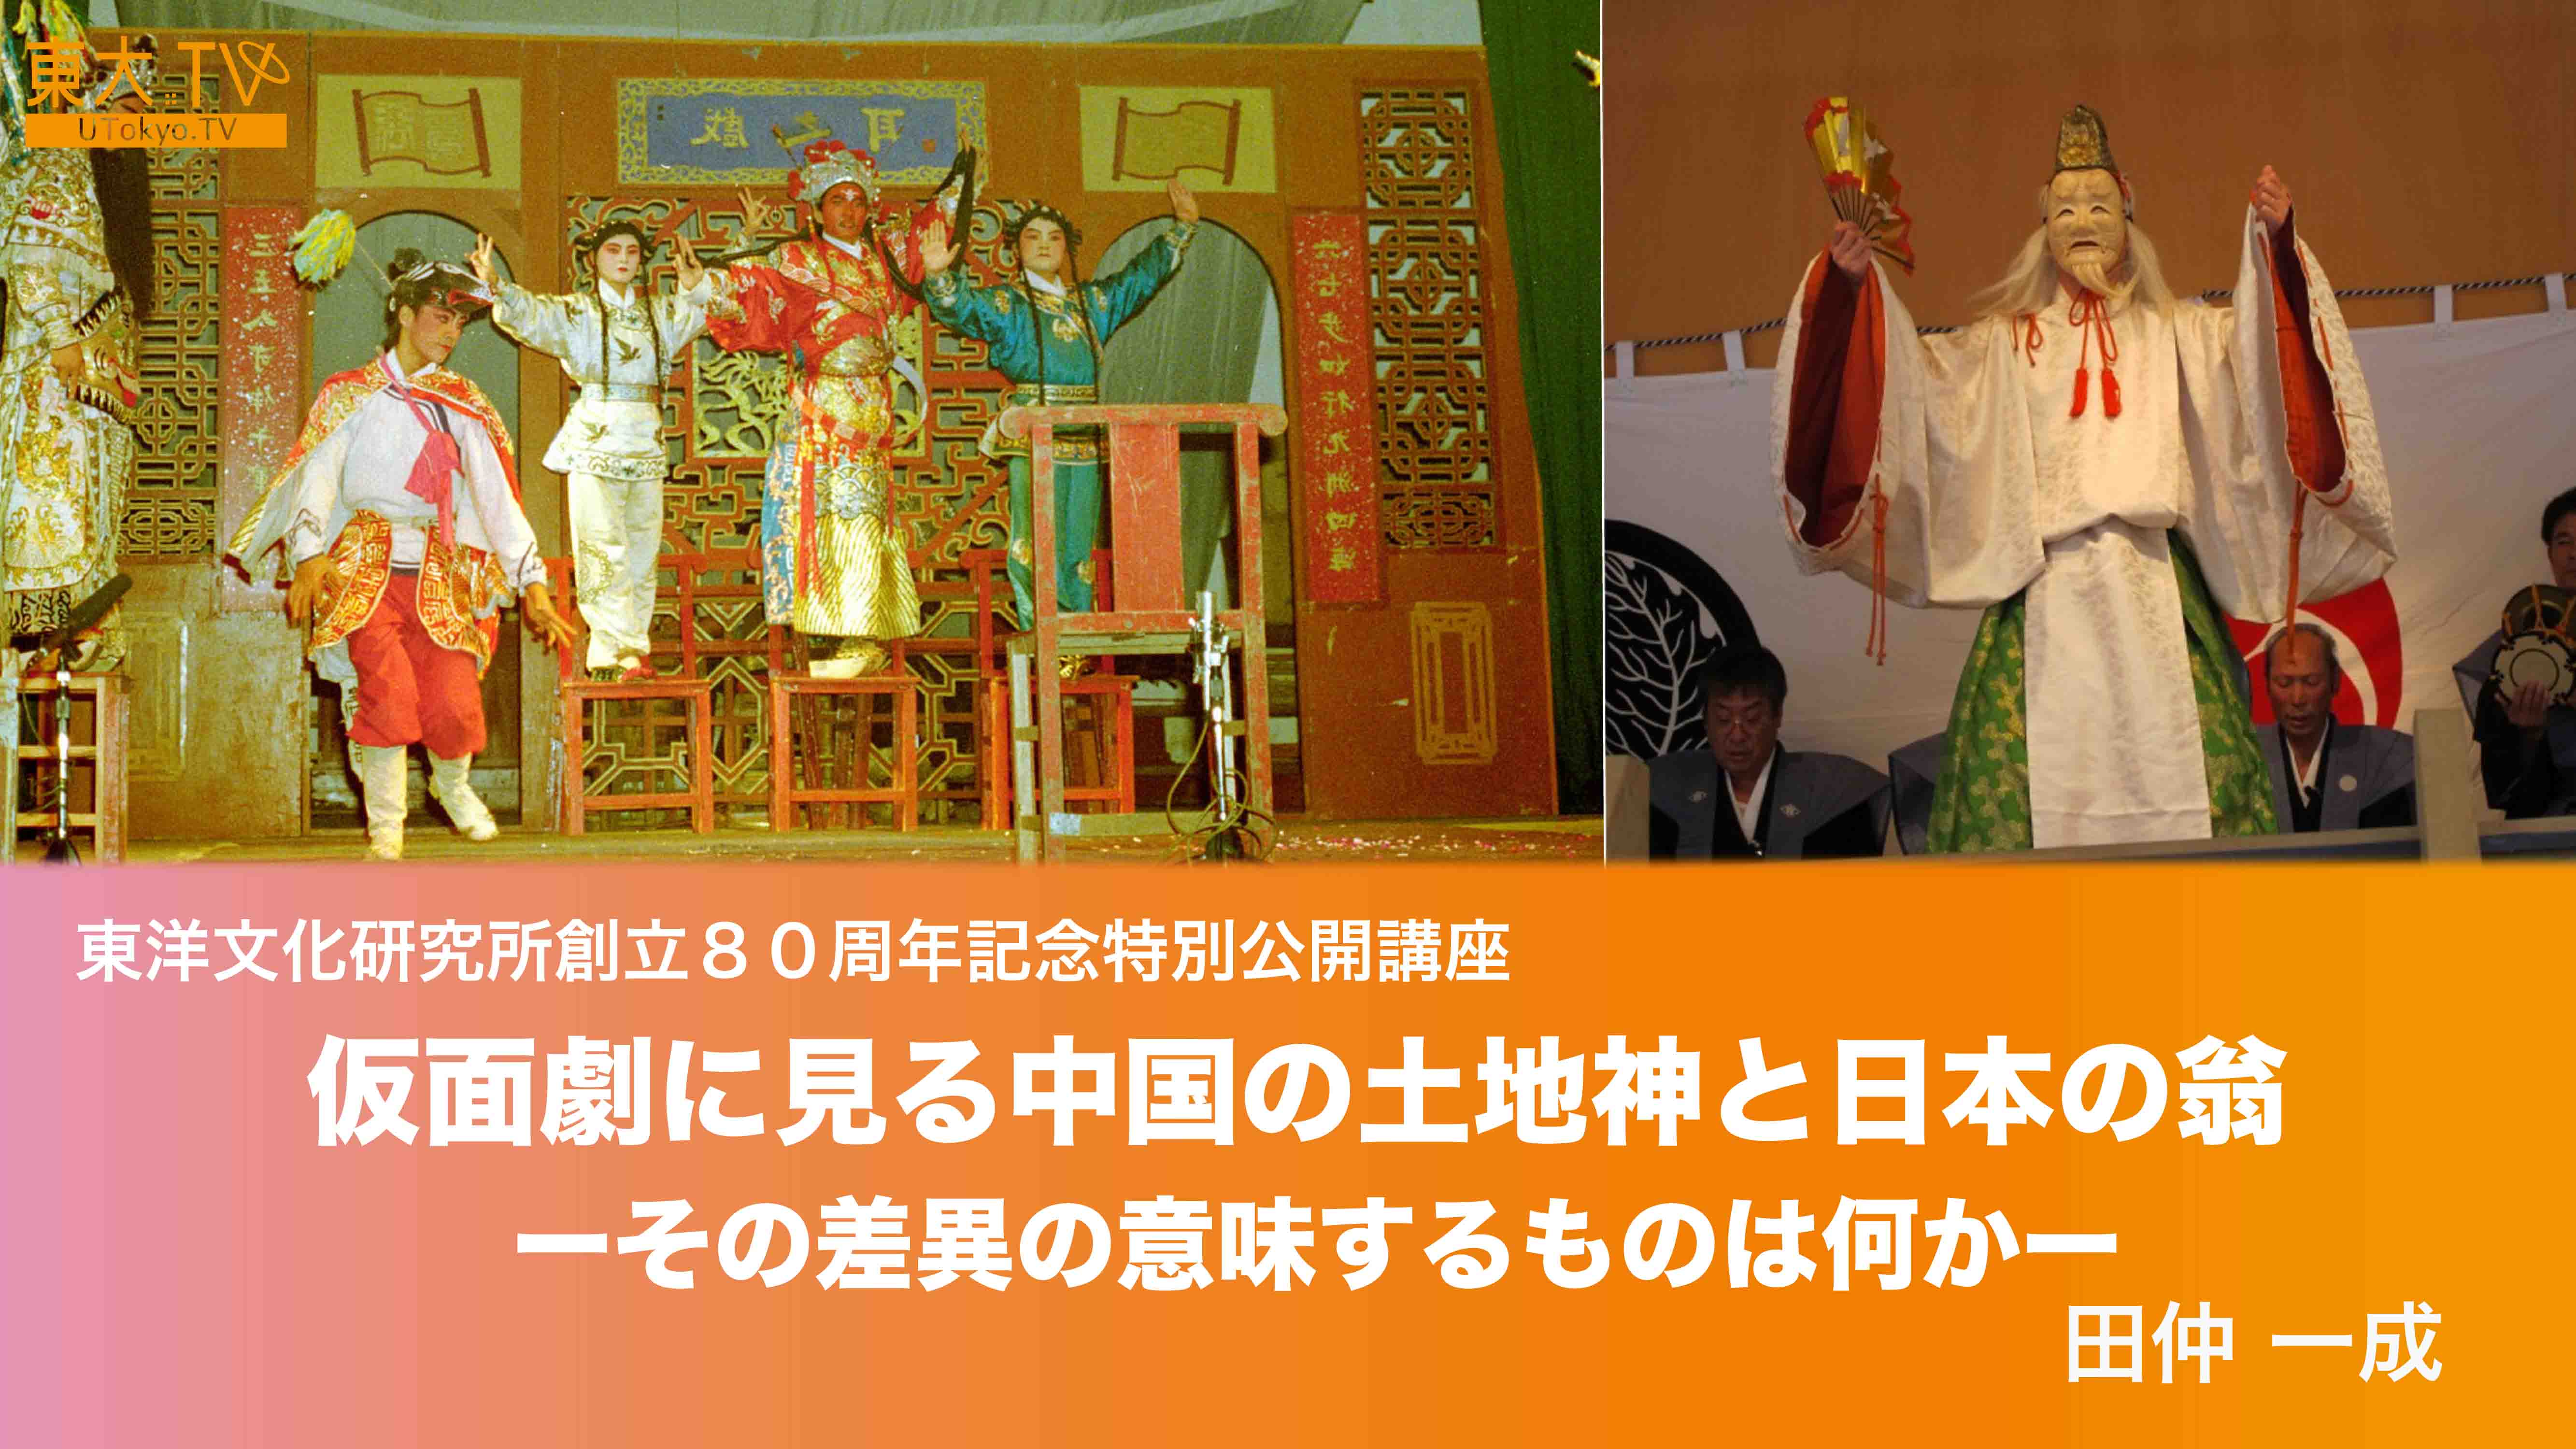 仮面劇に見る中国の“土地神”と日本の“翁”―その差異の意味するものは何か―